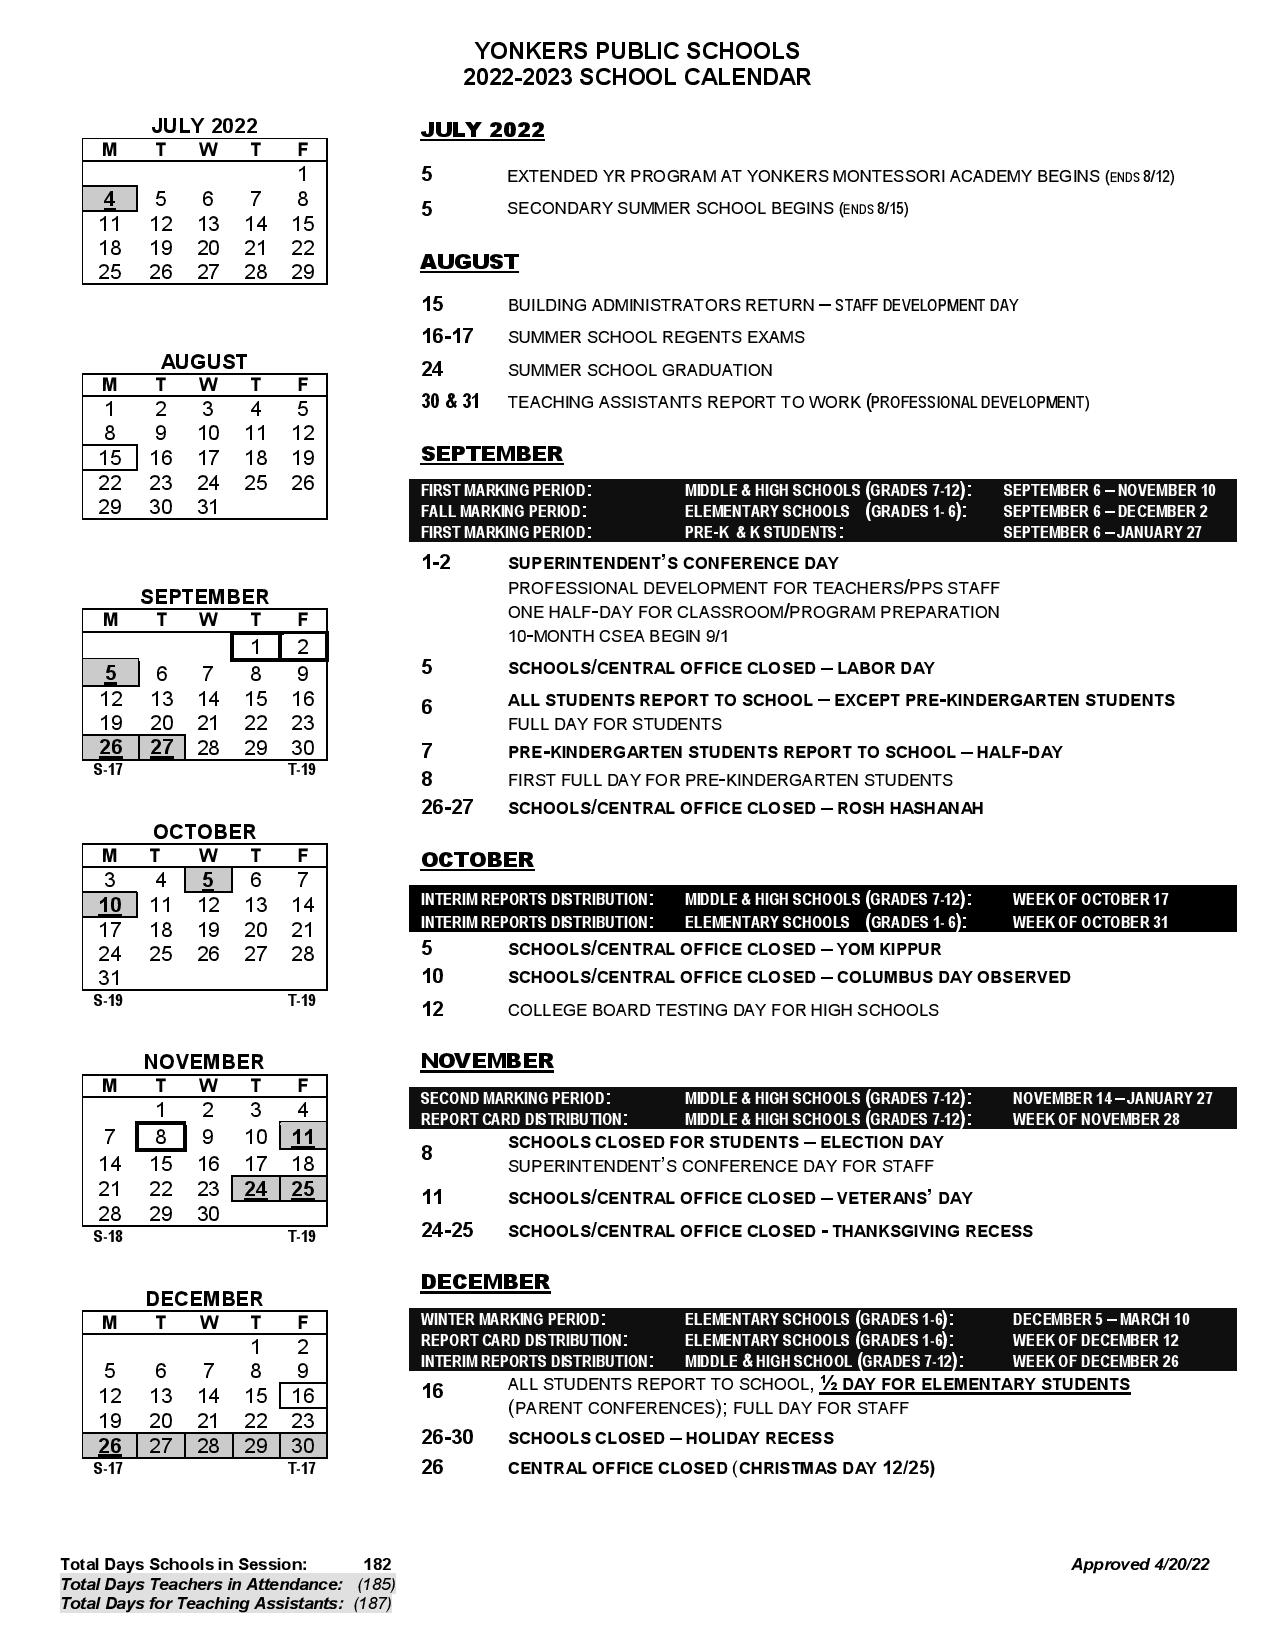 yonkers-public-schools-calendar-2022-2023-in-pdf